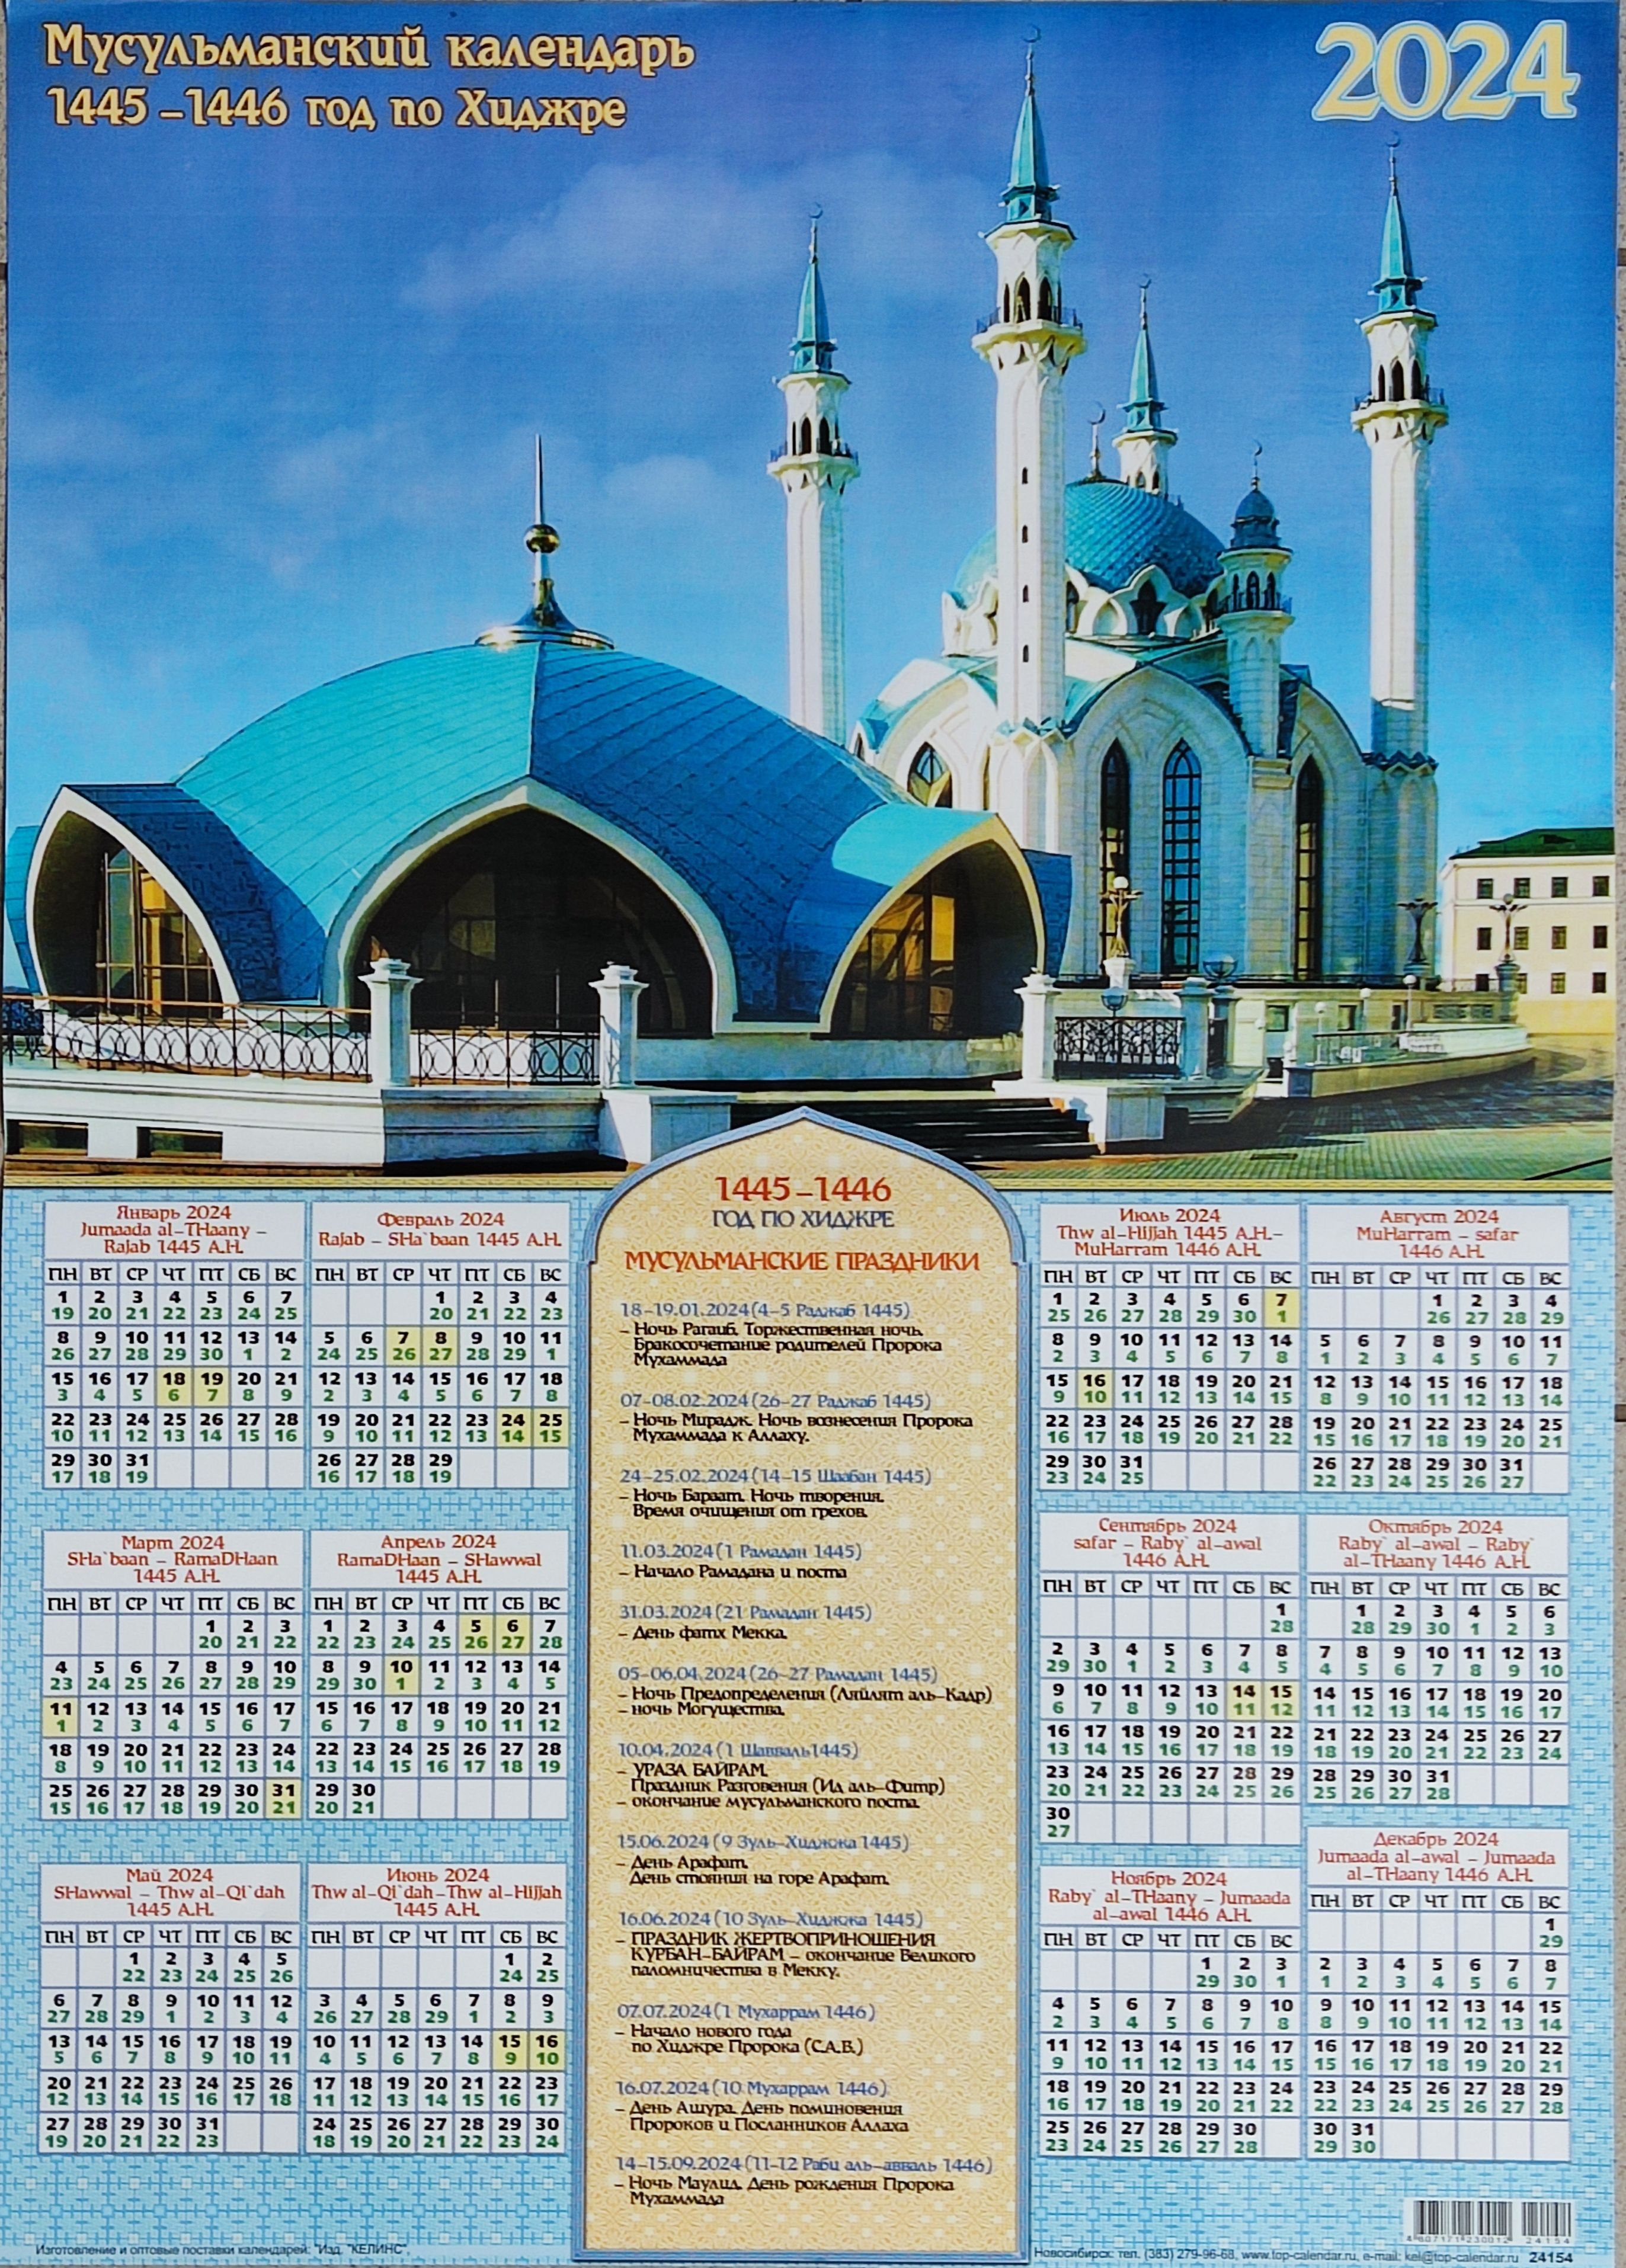 Показать мусульманский календарь. Мусульманский календарь. Календарь мусульманский календарь. Мусульманский календарь 2022. Мусульманский календарь на 2023 год.